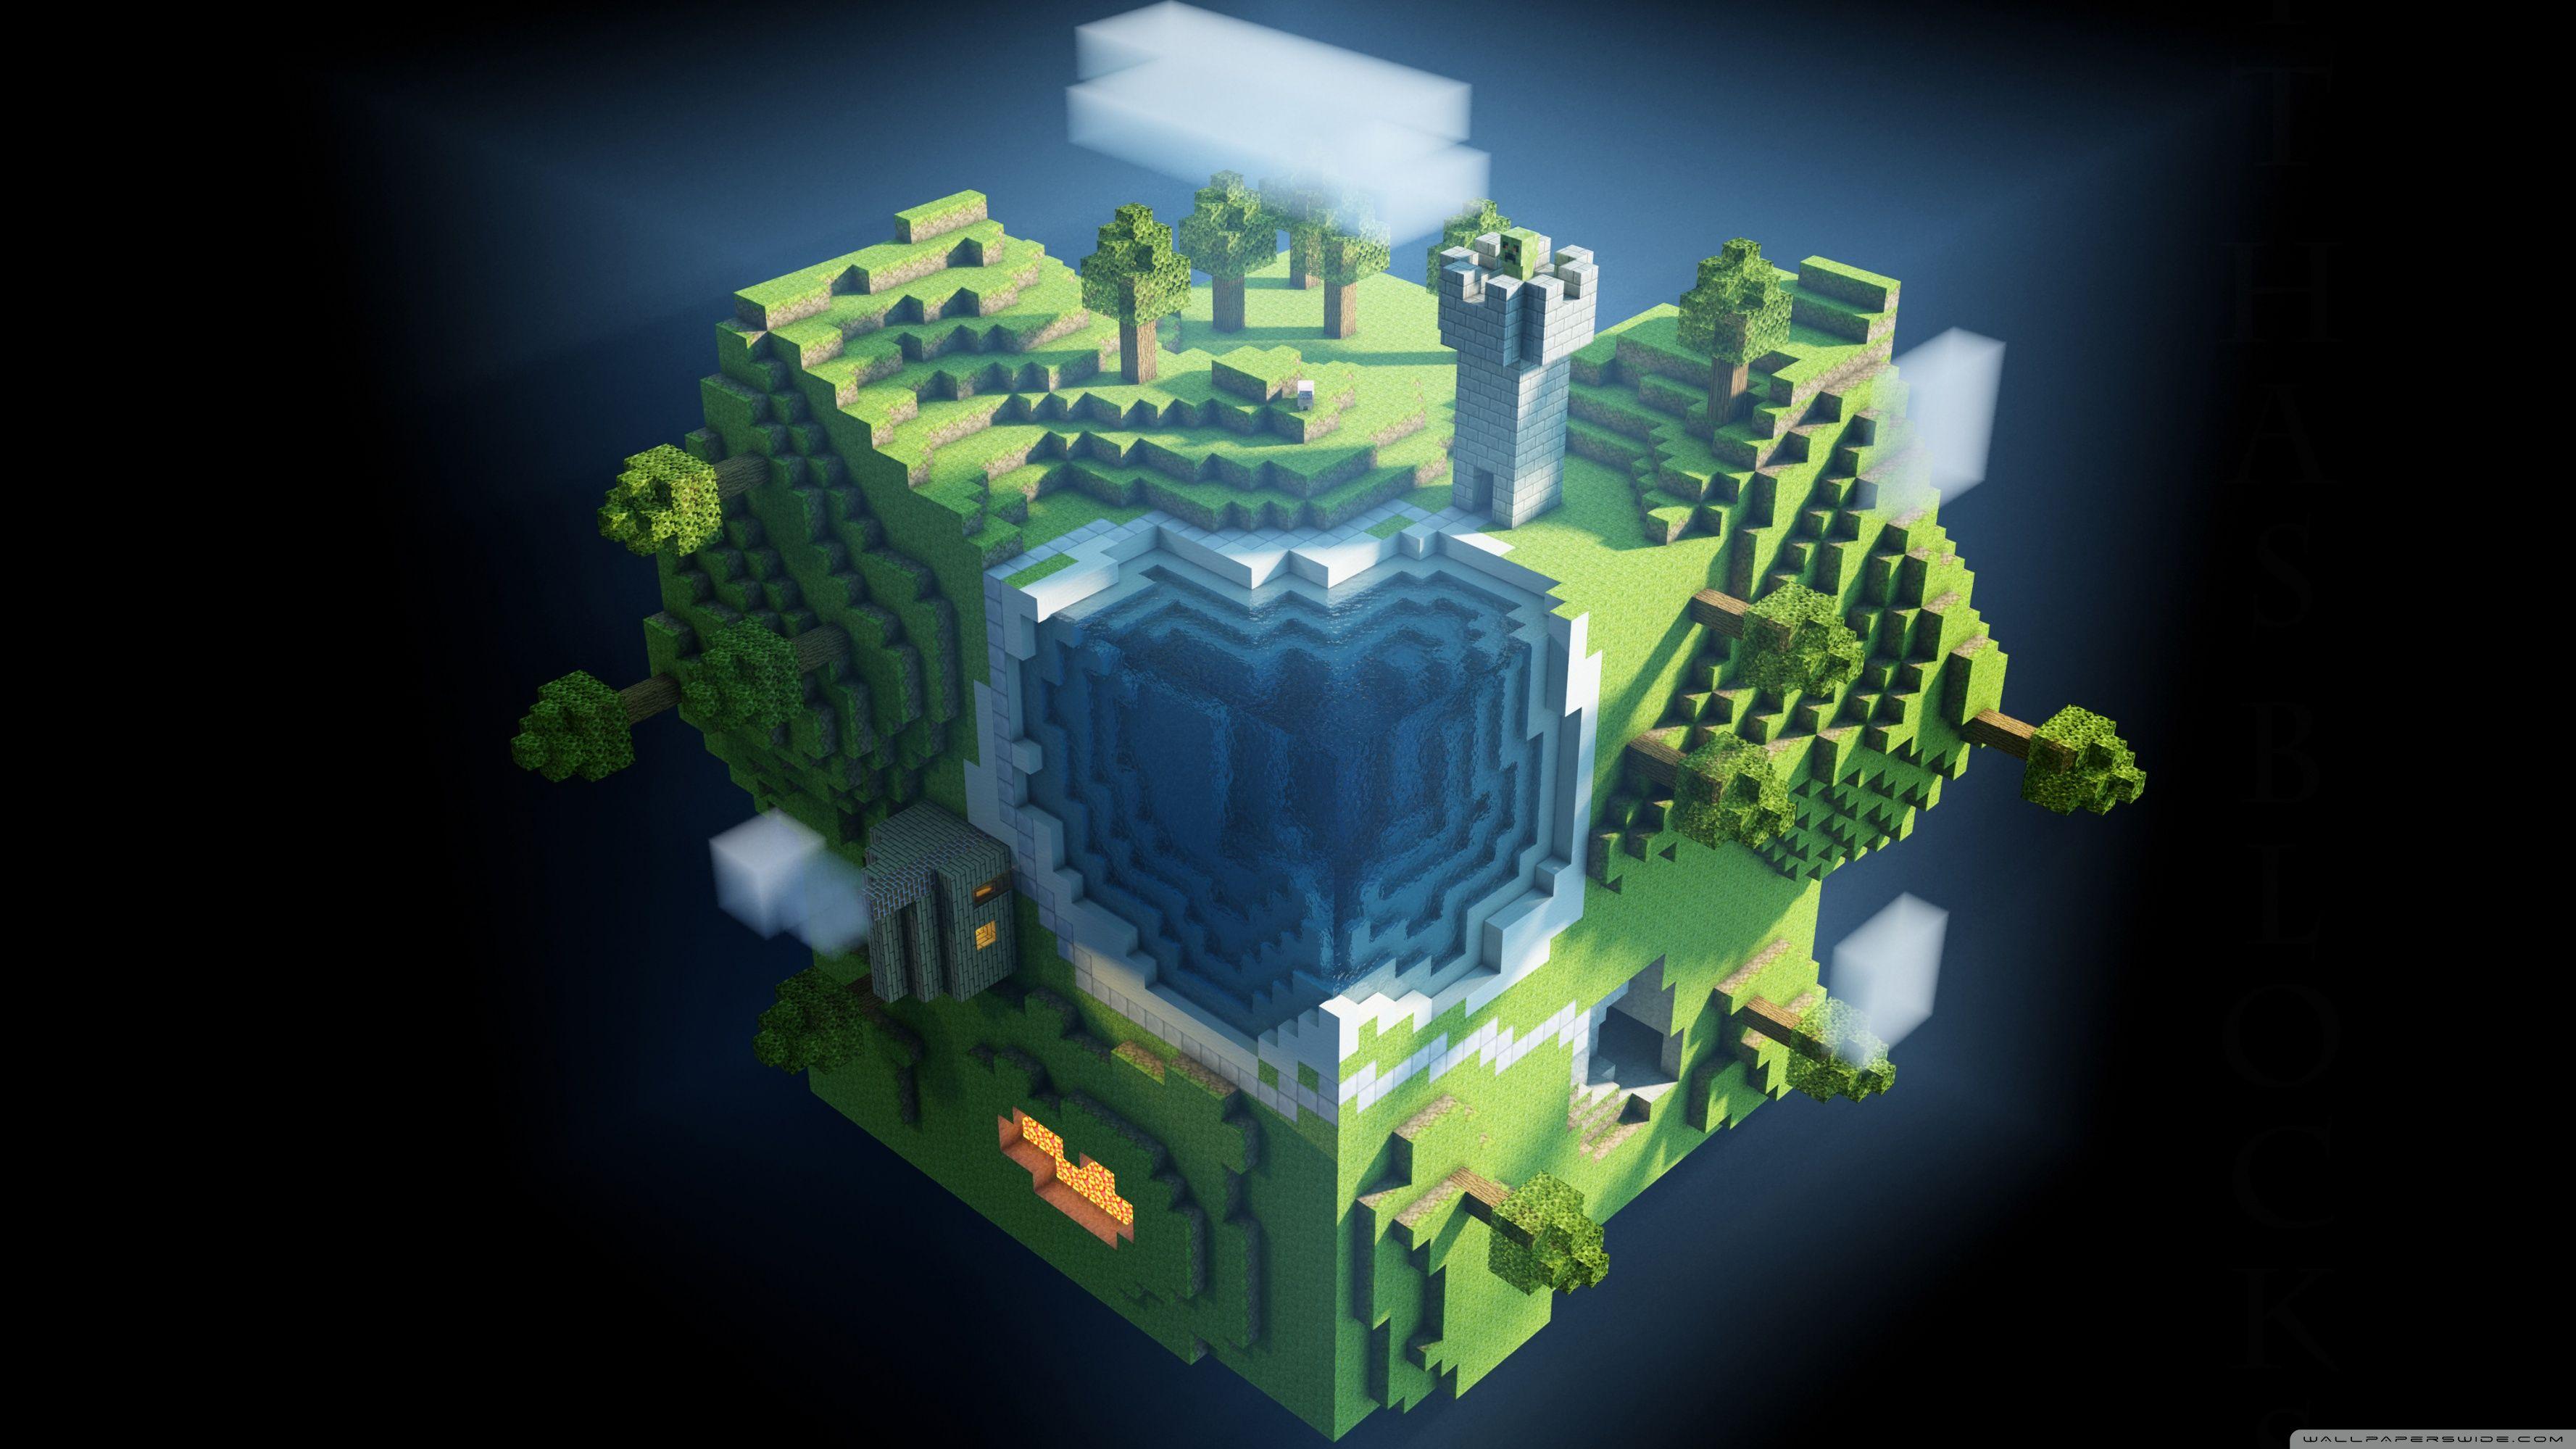 Gaming Backgrounds HD Minecraft - Nếu bạn là một người chơi game Minecraft đam mê, chắc chắn bạn không thể bỏ qua bộ sưu tập nền tảng chơi game HD này. Những hình ảnh đầy sắc màu, tươi tắn sẽ giúp bạn thêm động lực chơi game thanh xuân với một trái tim trẻ trung.